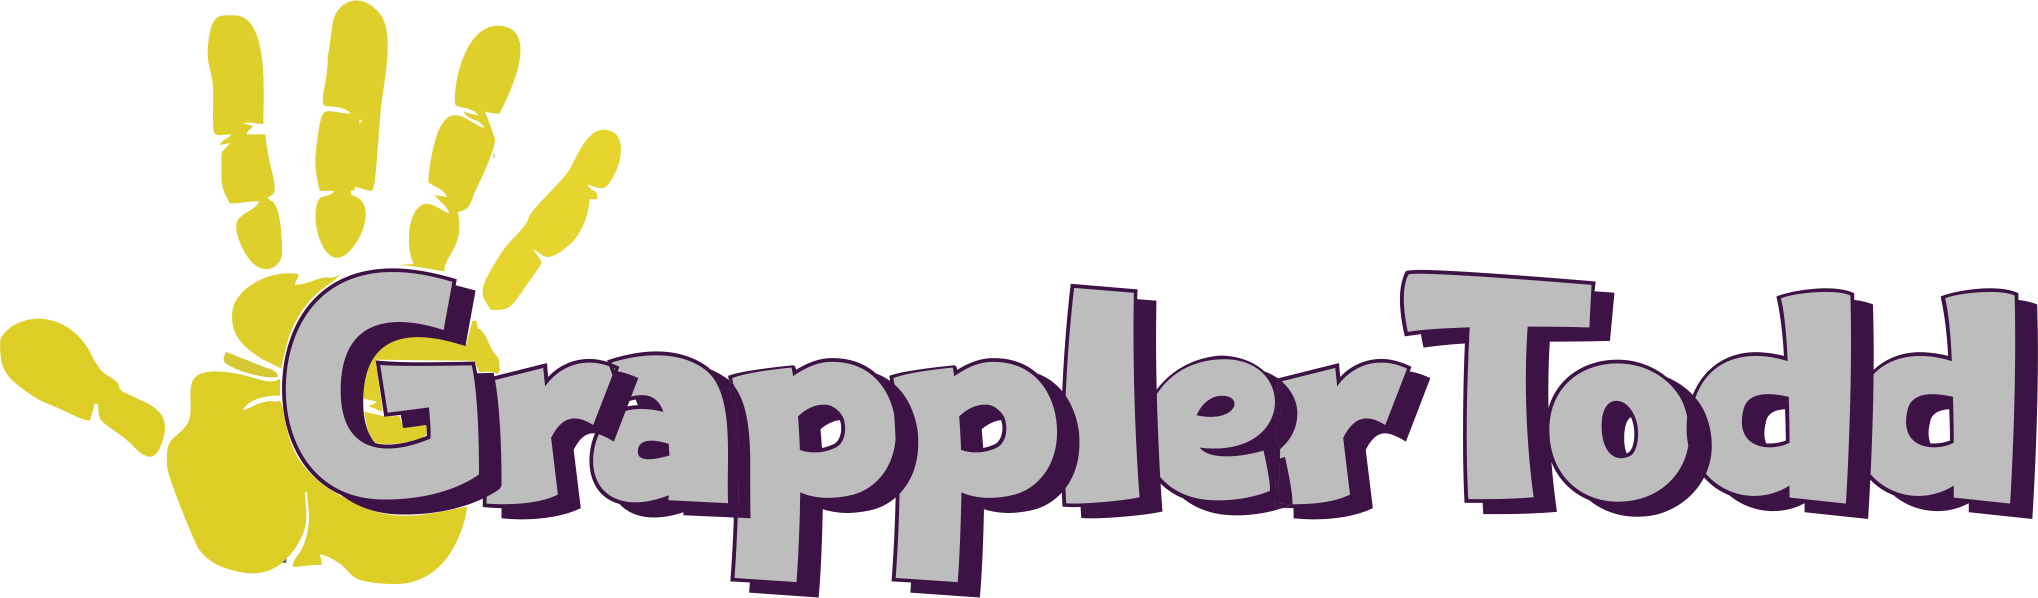 grappler-logo